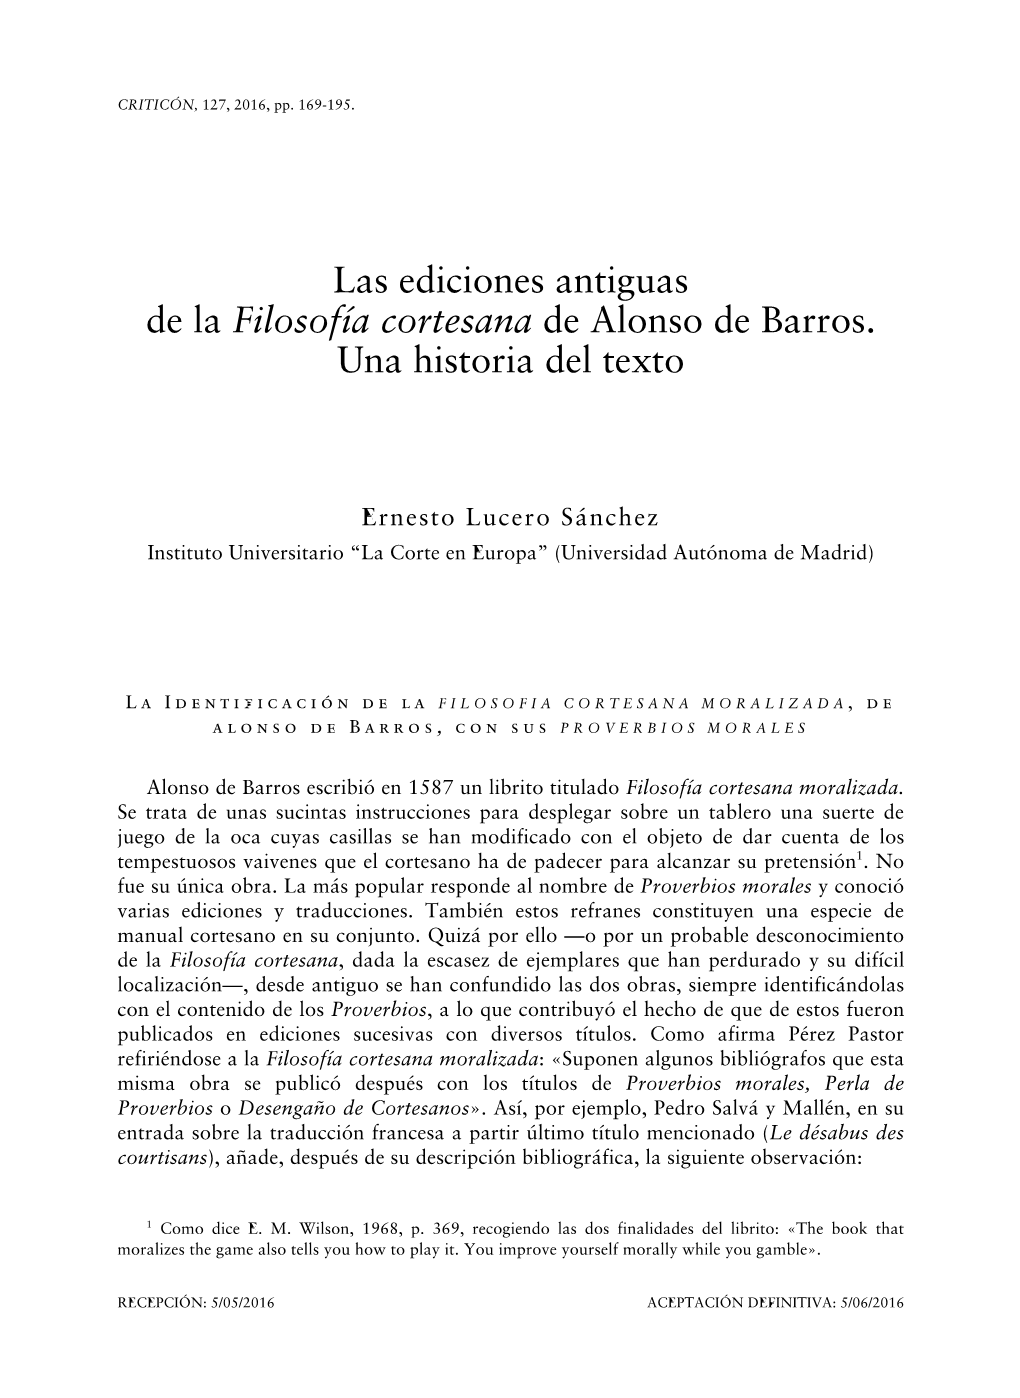 Las Ediciones Antiguas De La Filosofía Cortesana De Alonso De Barros. Una Historia Del Texto